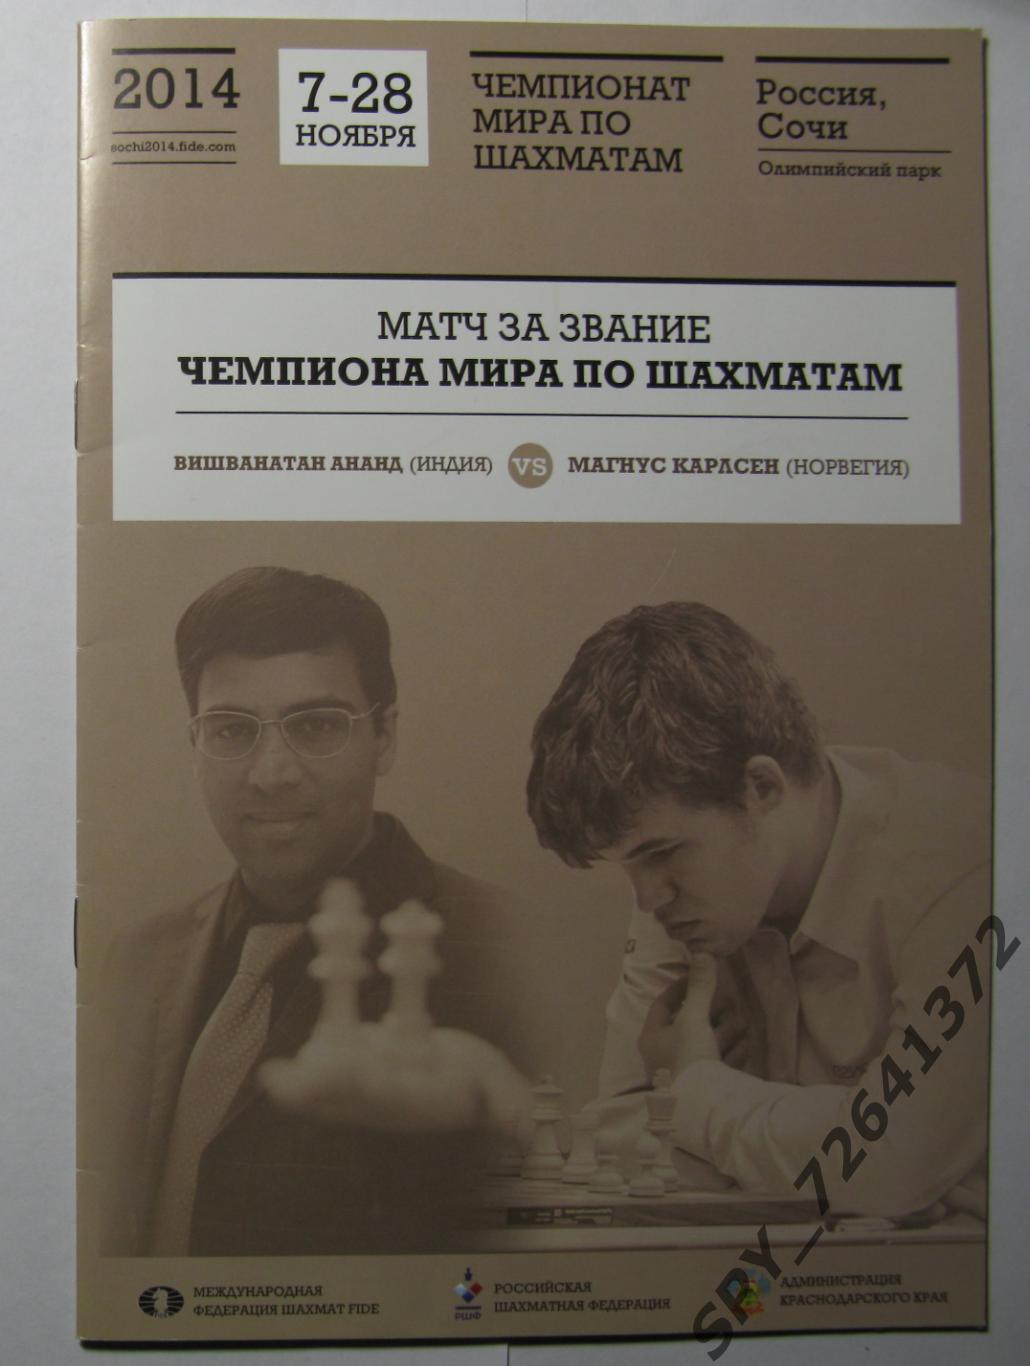 Программа: Матч Ананд-Карлсен. 7-28 ноября 2014. Чемпионат мира по шахматам.